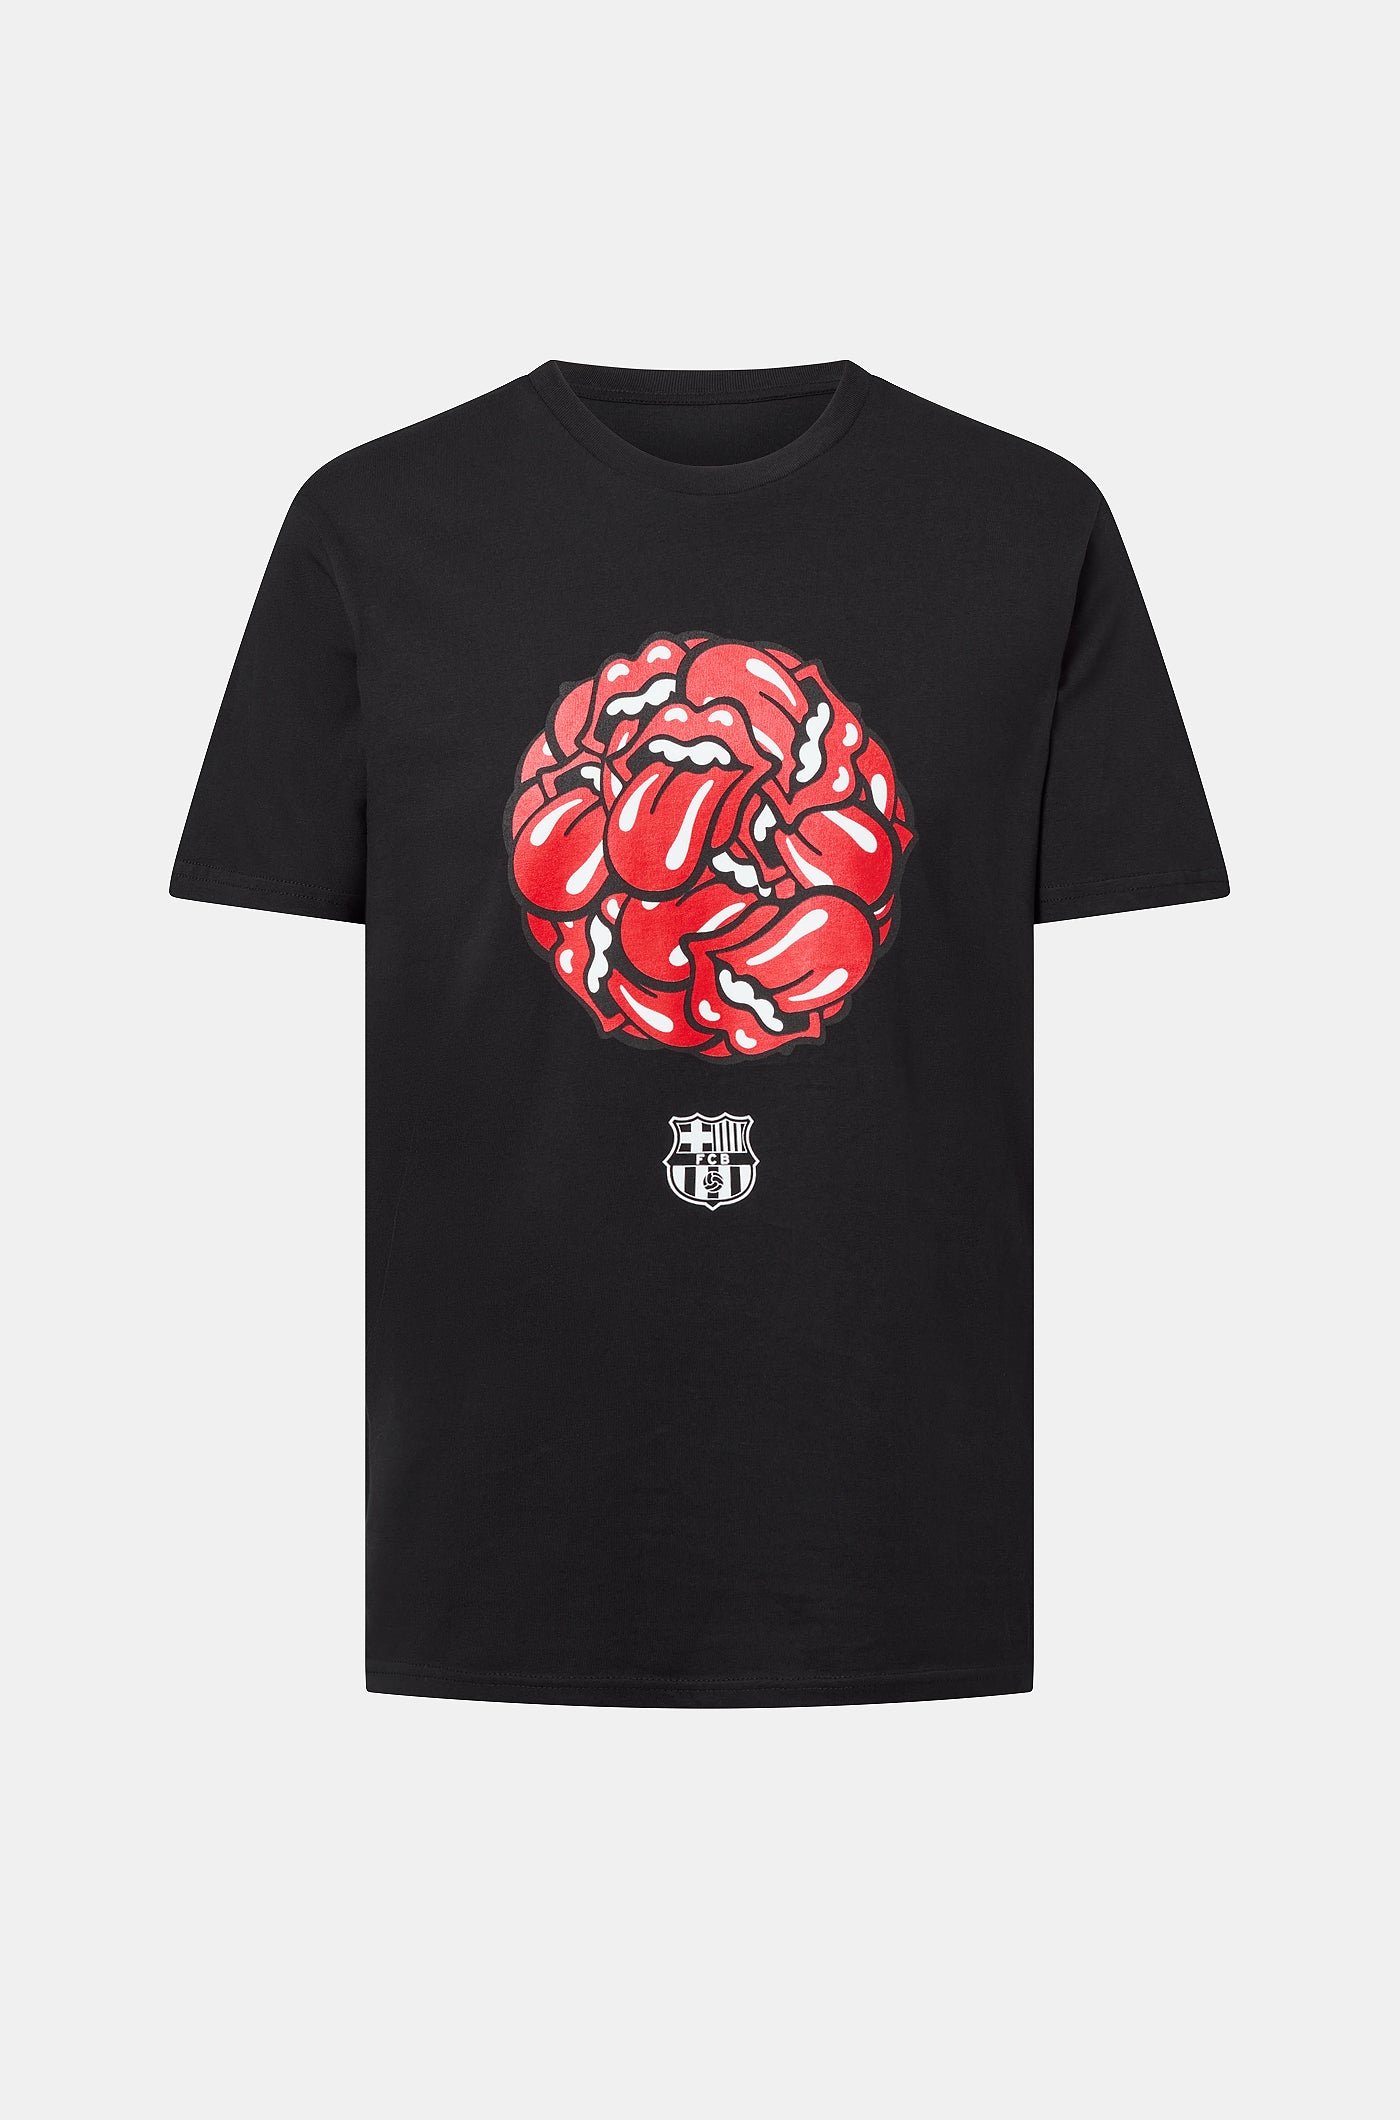 T-Shirt Barça x Rolling Stones, limitierte Auflage